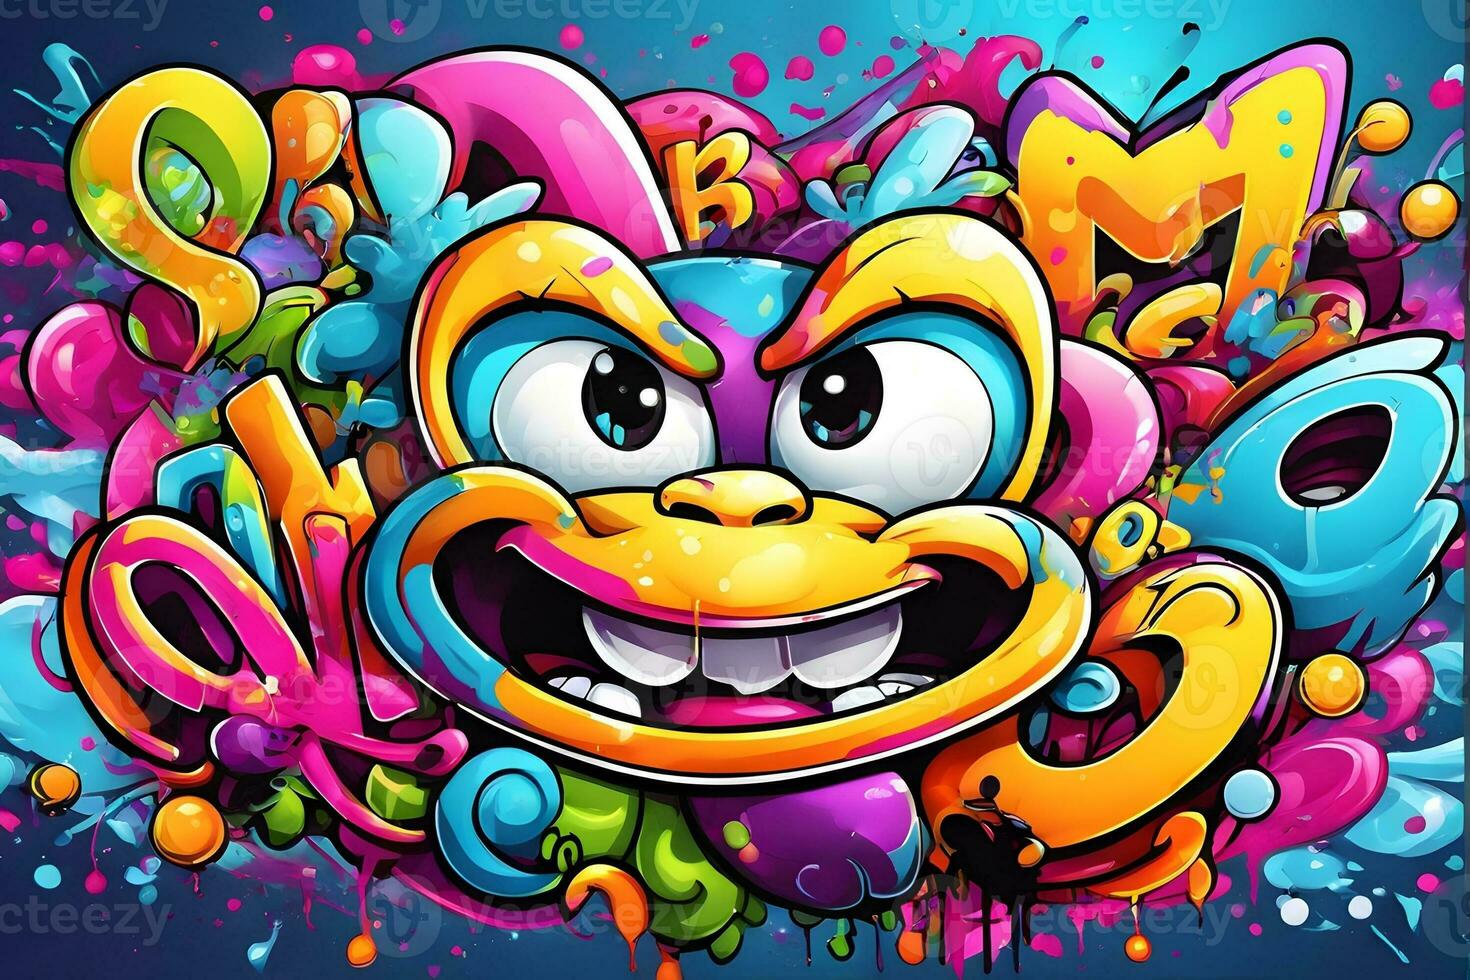 Cartoon Graffiti Wallpaper, Cartoon Graffiti Background, Cartoon Graffiti Pattern, Cartoon Character Graffiti background, Cartoon Character Graffiti Art, Graffiti Background, AI Generative photo